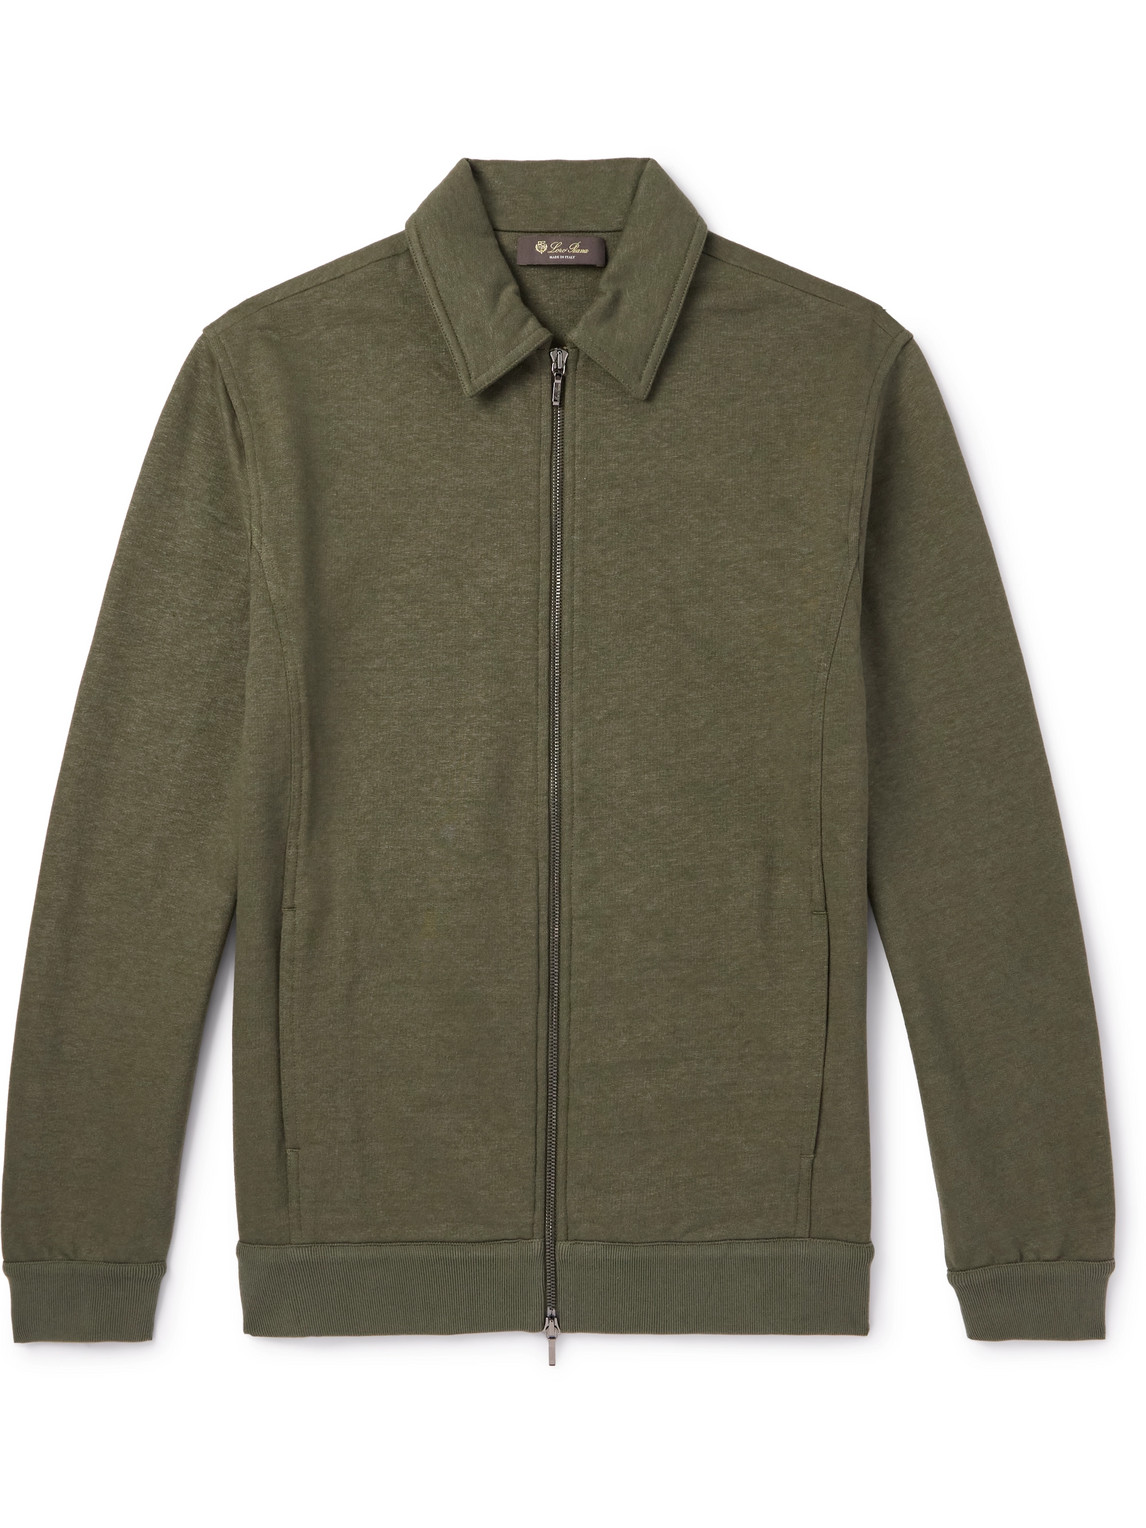 Kawaguchi Cotton, Linen and Cashmere-Blend Jersey Bomber Jacket